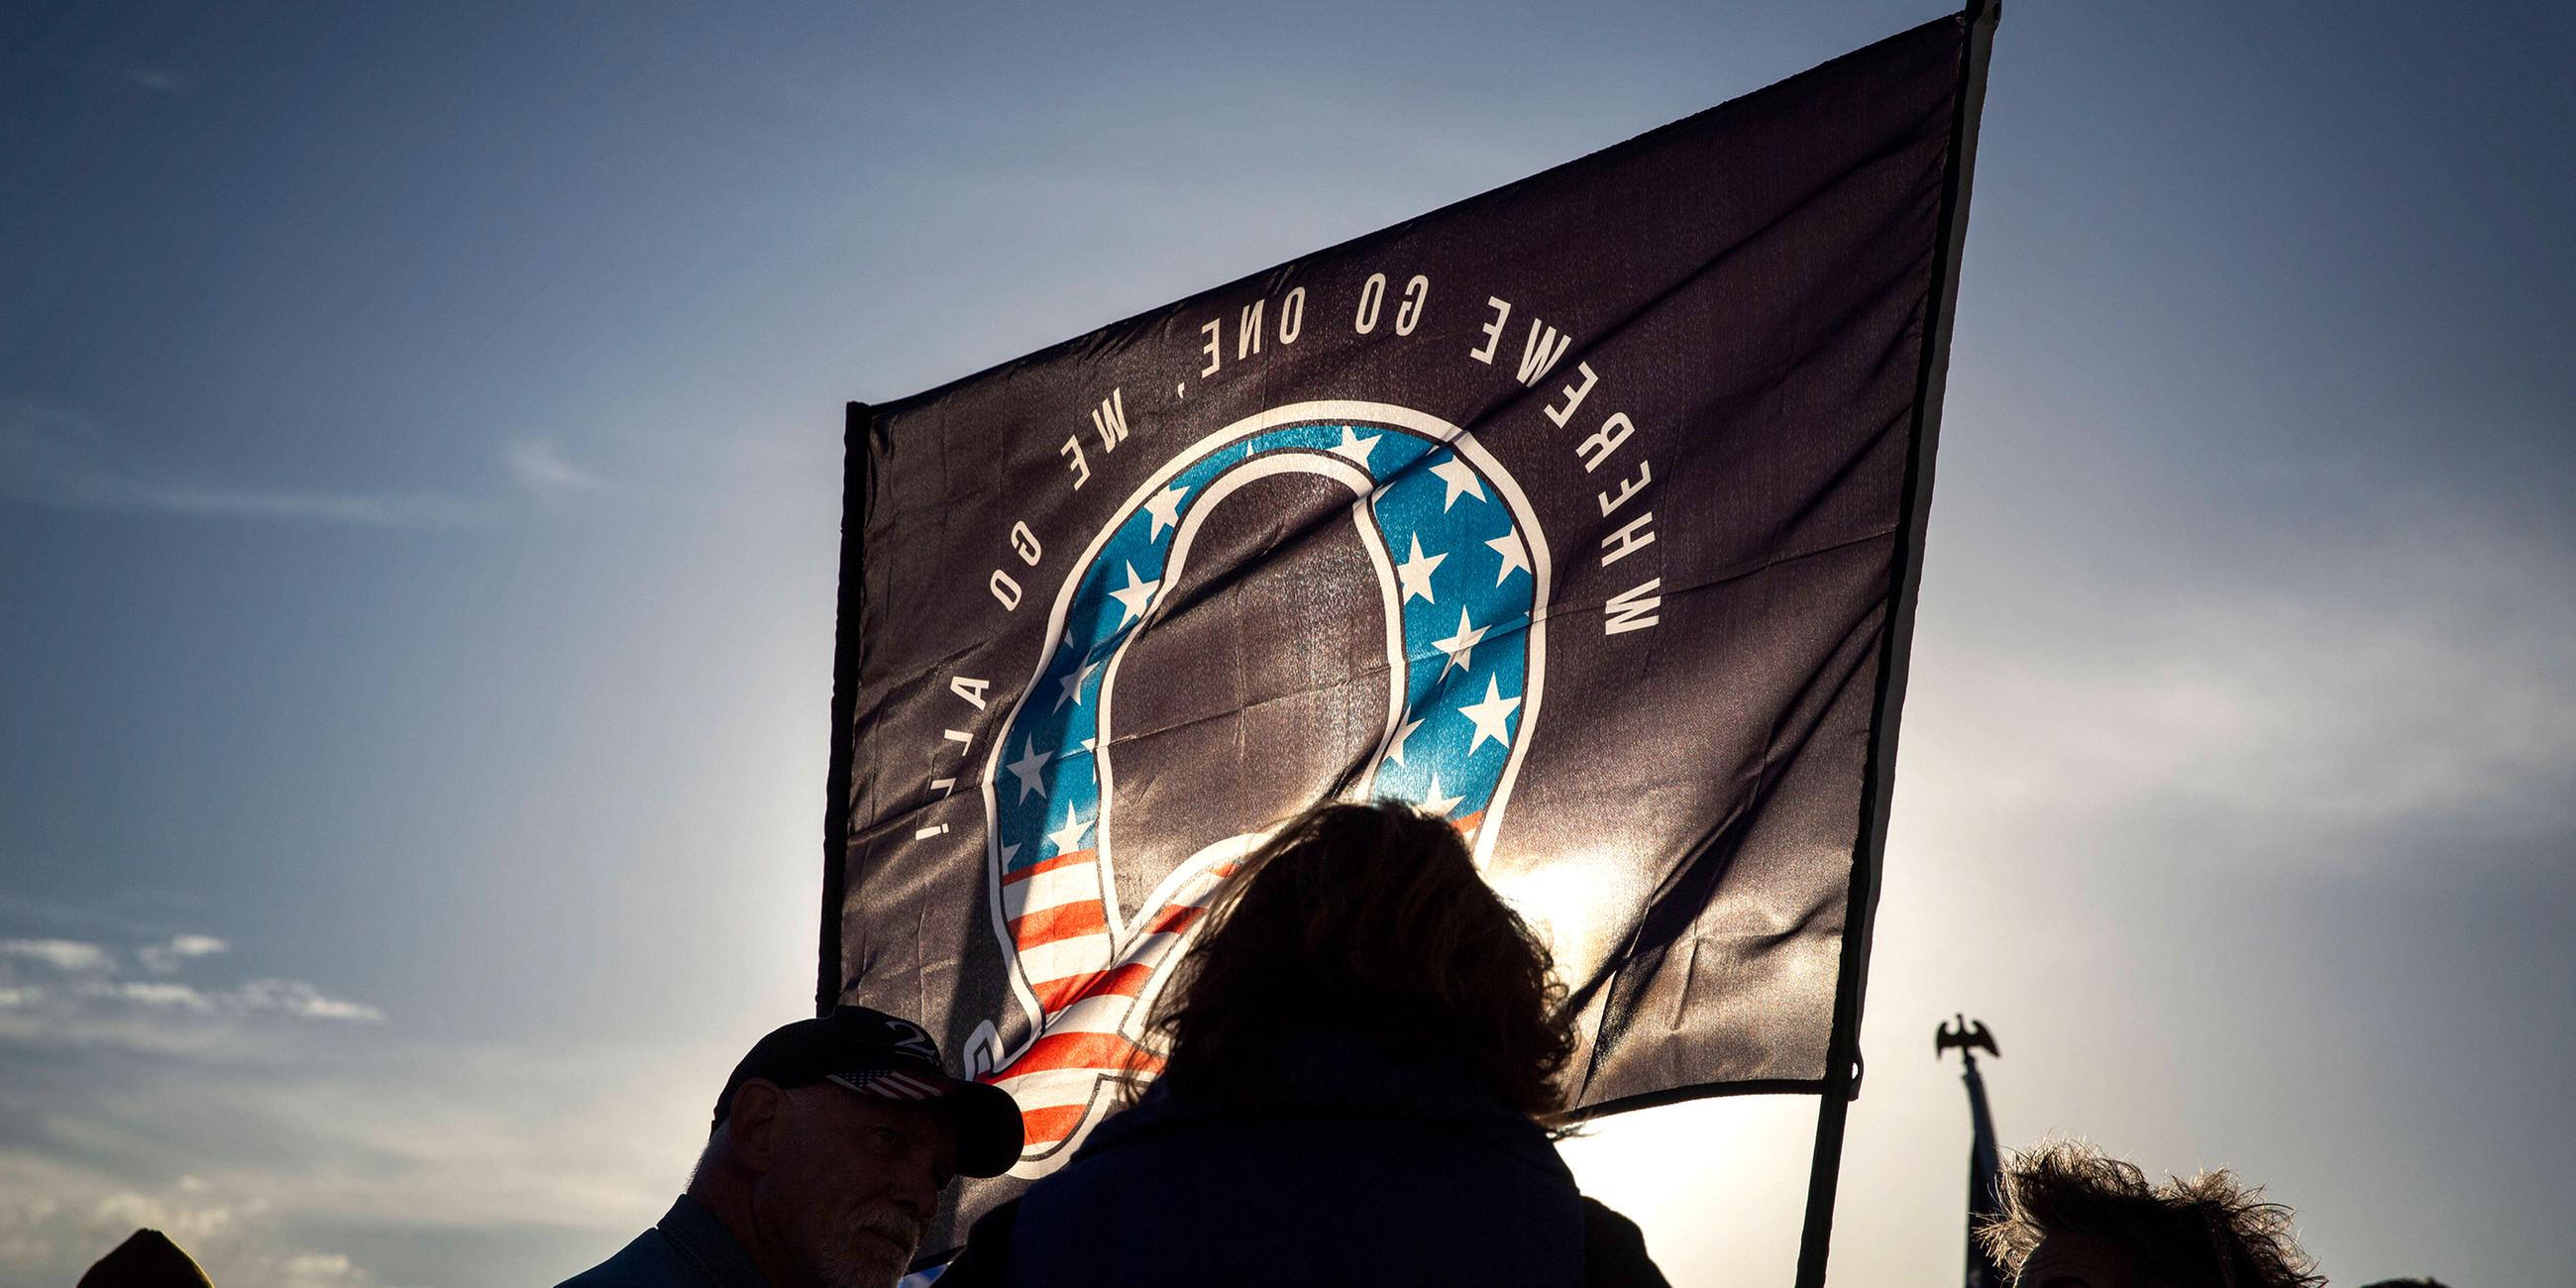 Vor einer von der untergehenden Sonne angeleuchteten Flagge mit einerm großen Q in den Farben der amerikanischen Flagge, sind die Silhouetten mehrerer Personen dunkel zu sehen.